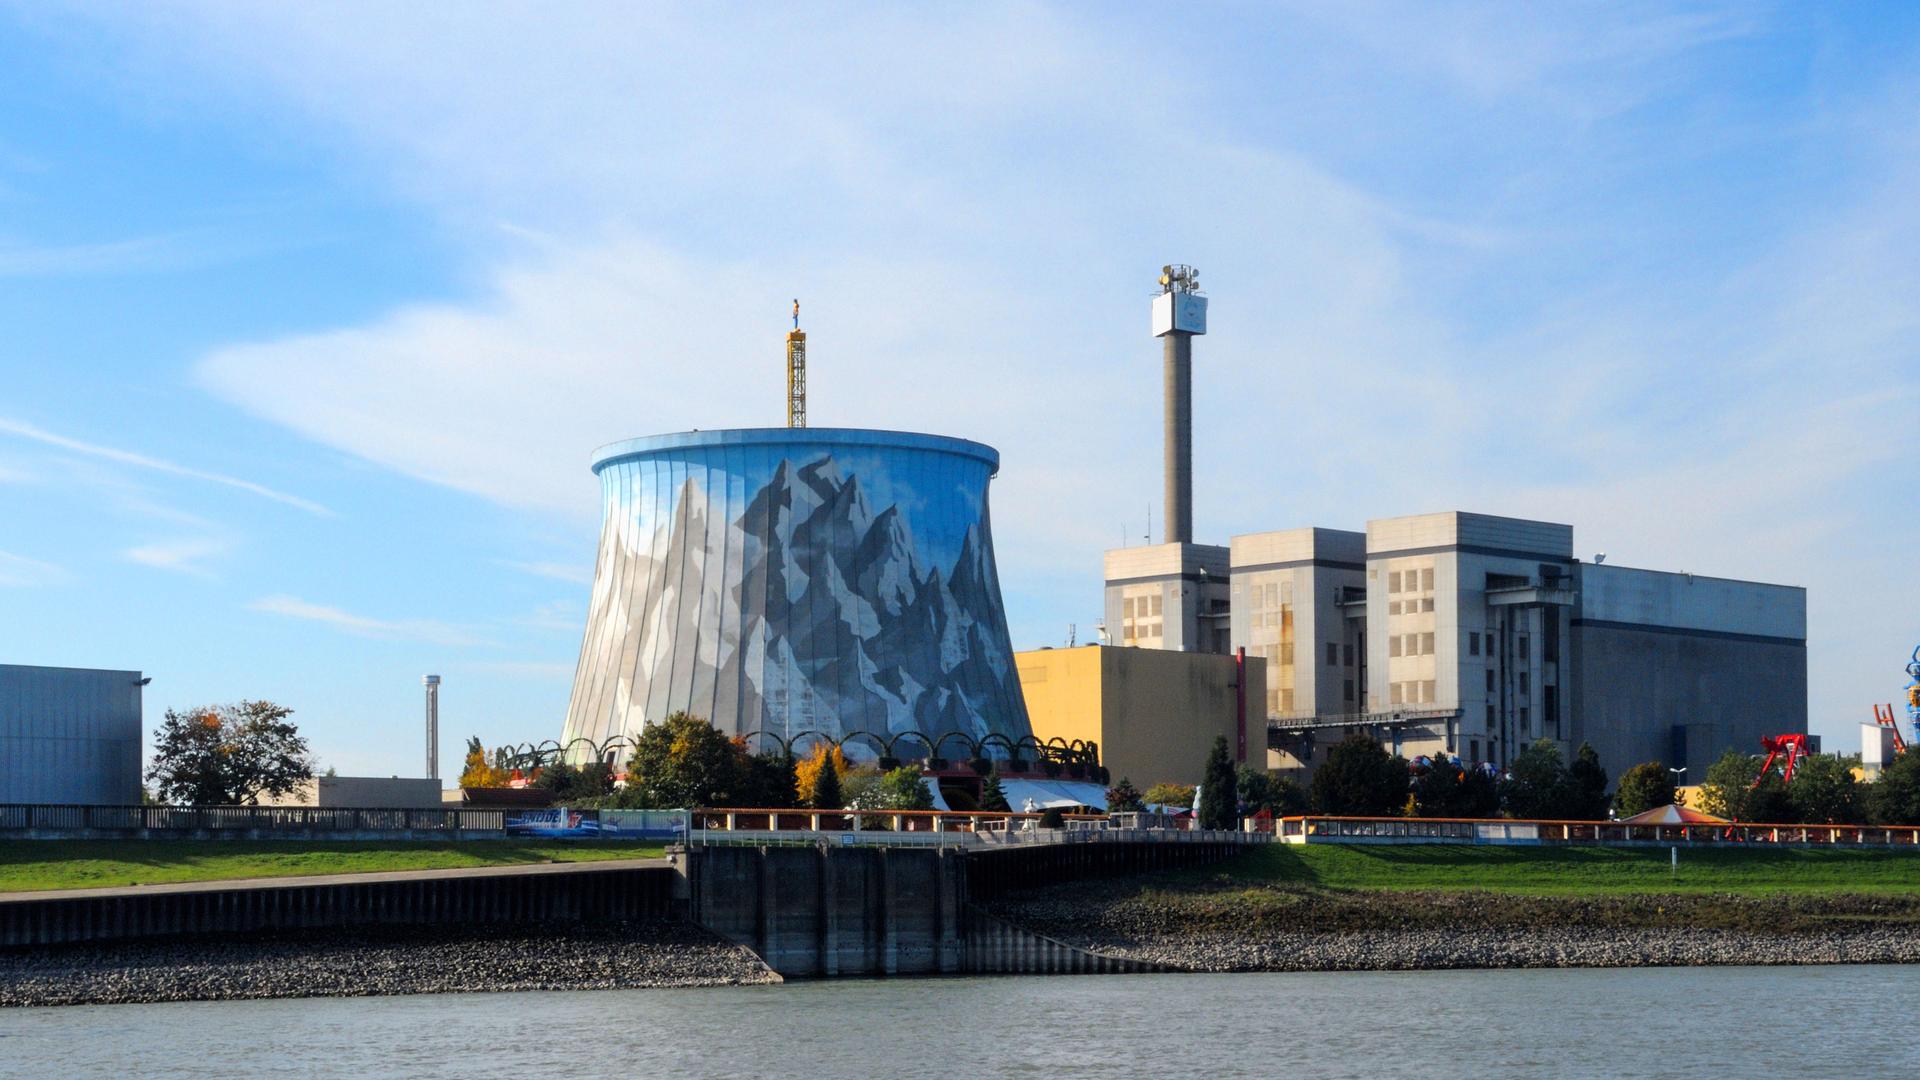 Kernies Wunderland: Das ehemalige Kernkraftwerk  in Kalkar am Niederrhein ist heute ein Vergnügungspark.